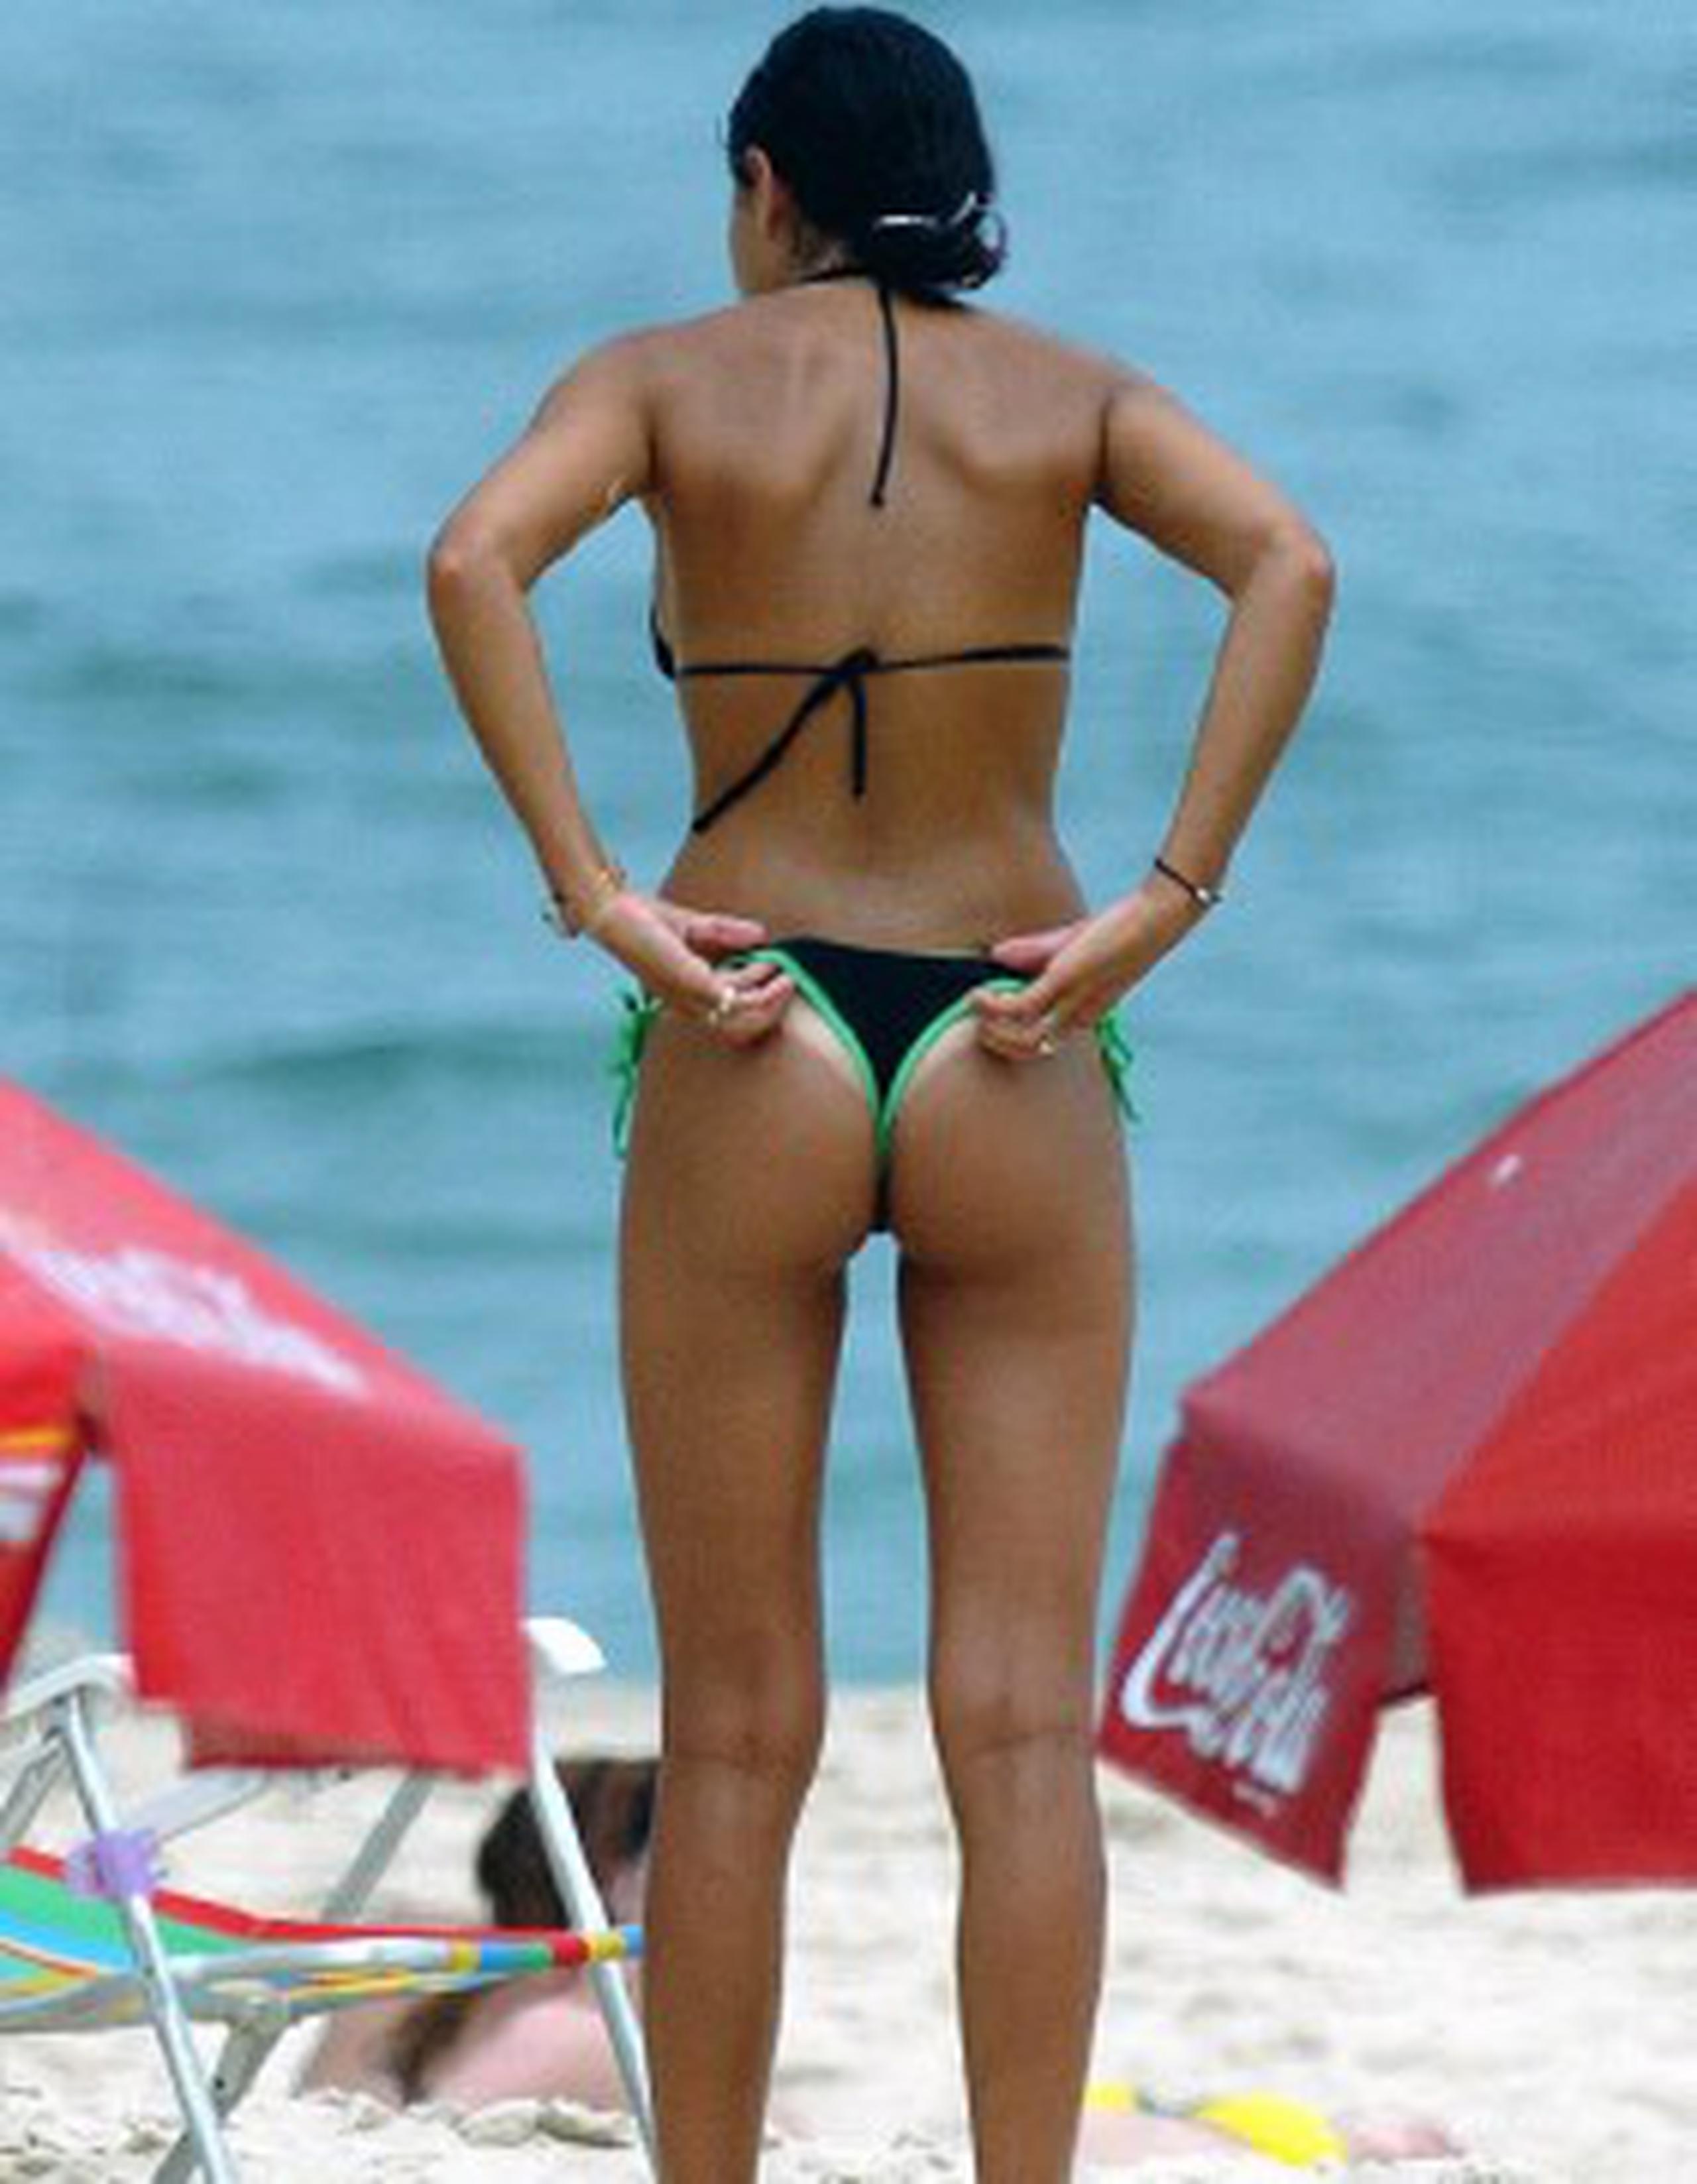 Las tangas dan paso a bikinis cada día más grandes en Brasil - Primera Hora